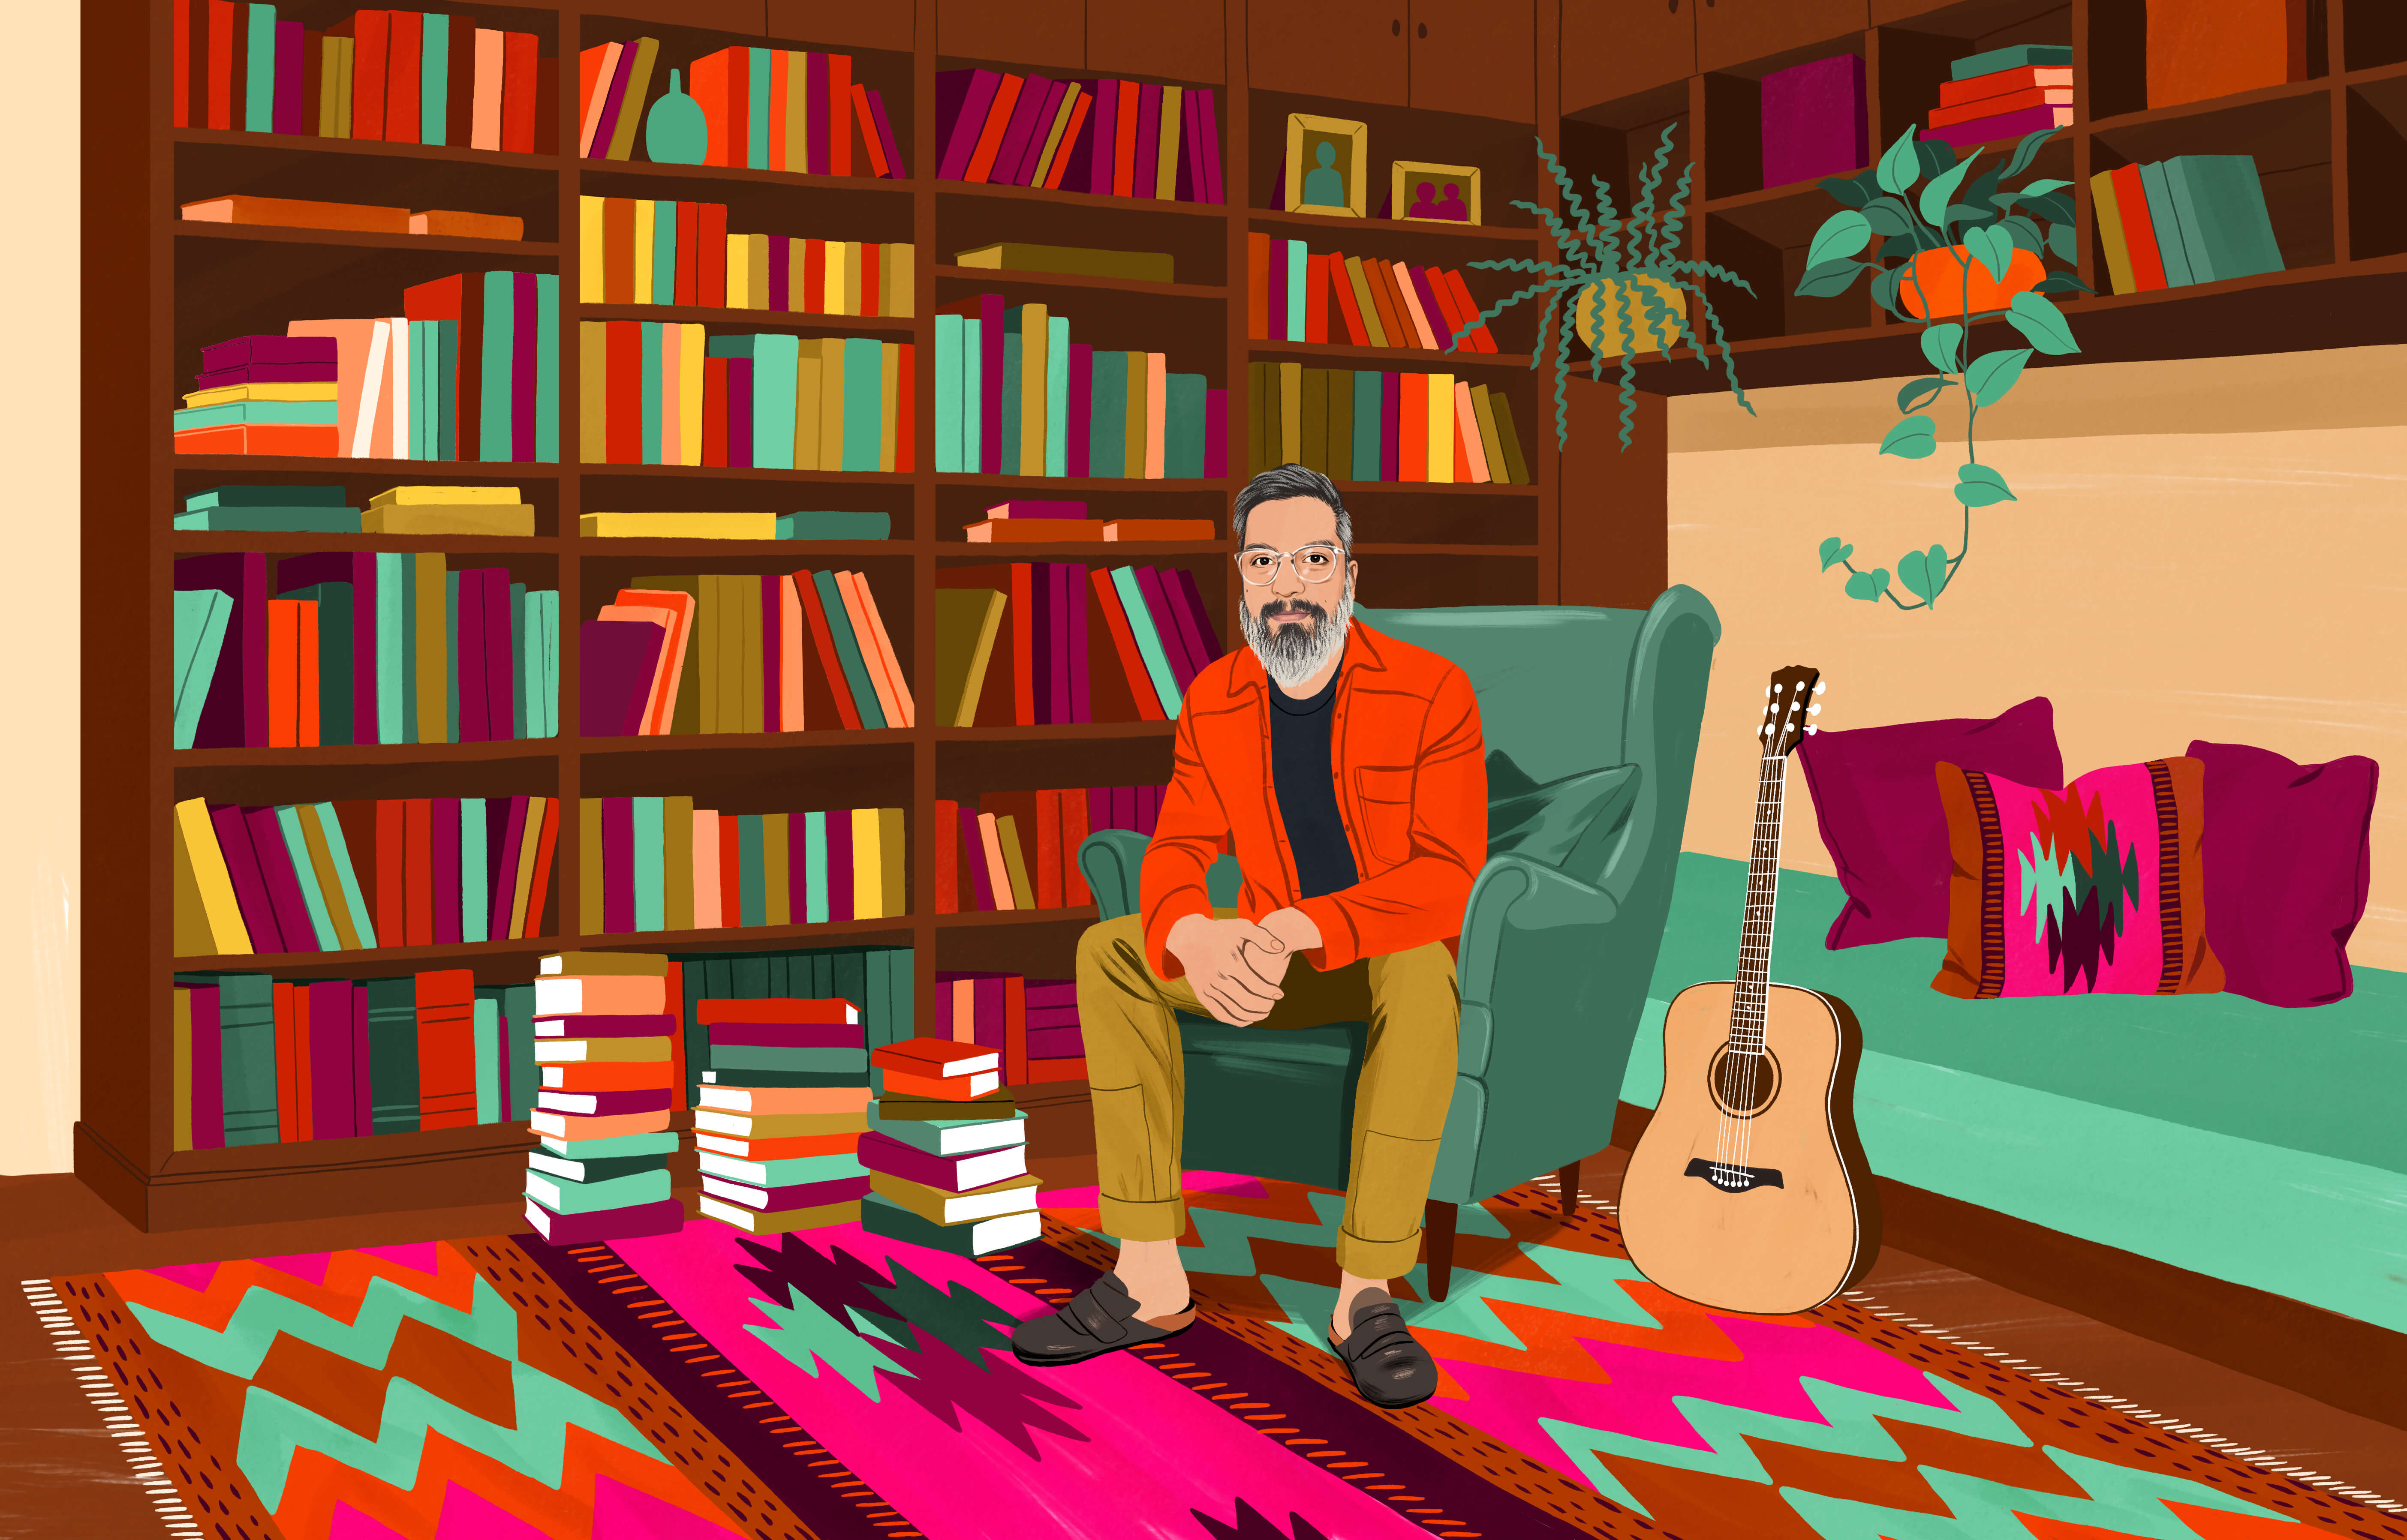 JP sentado en un sillón orejero y con muchos libros a su alrededor en estanterías y en pilas en el suelo. En el suelo hay también una alfombra chilena típica con formas de colores. Cerca de JP hay una guitarra acústica.